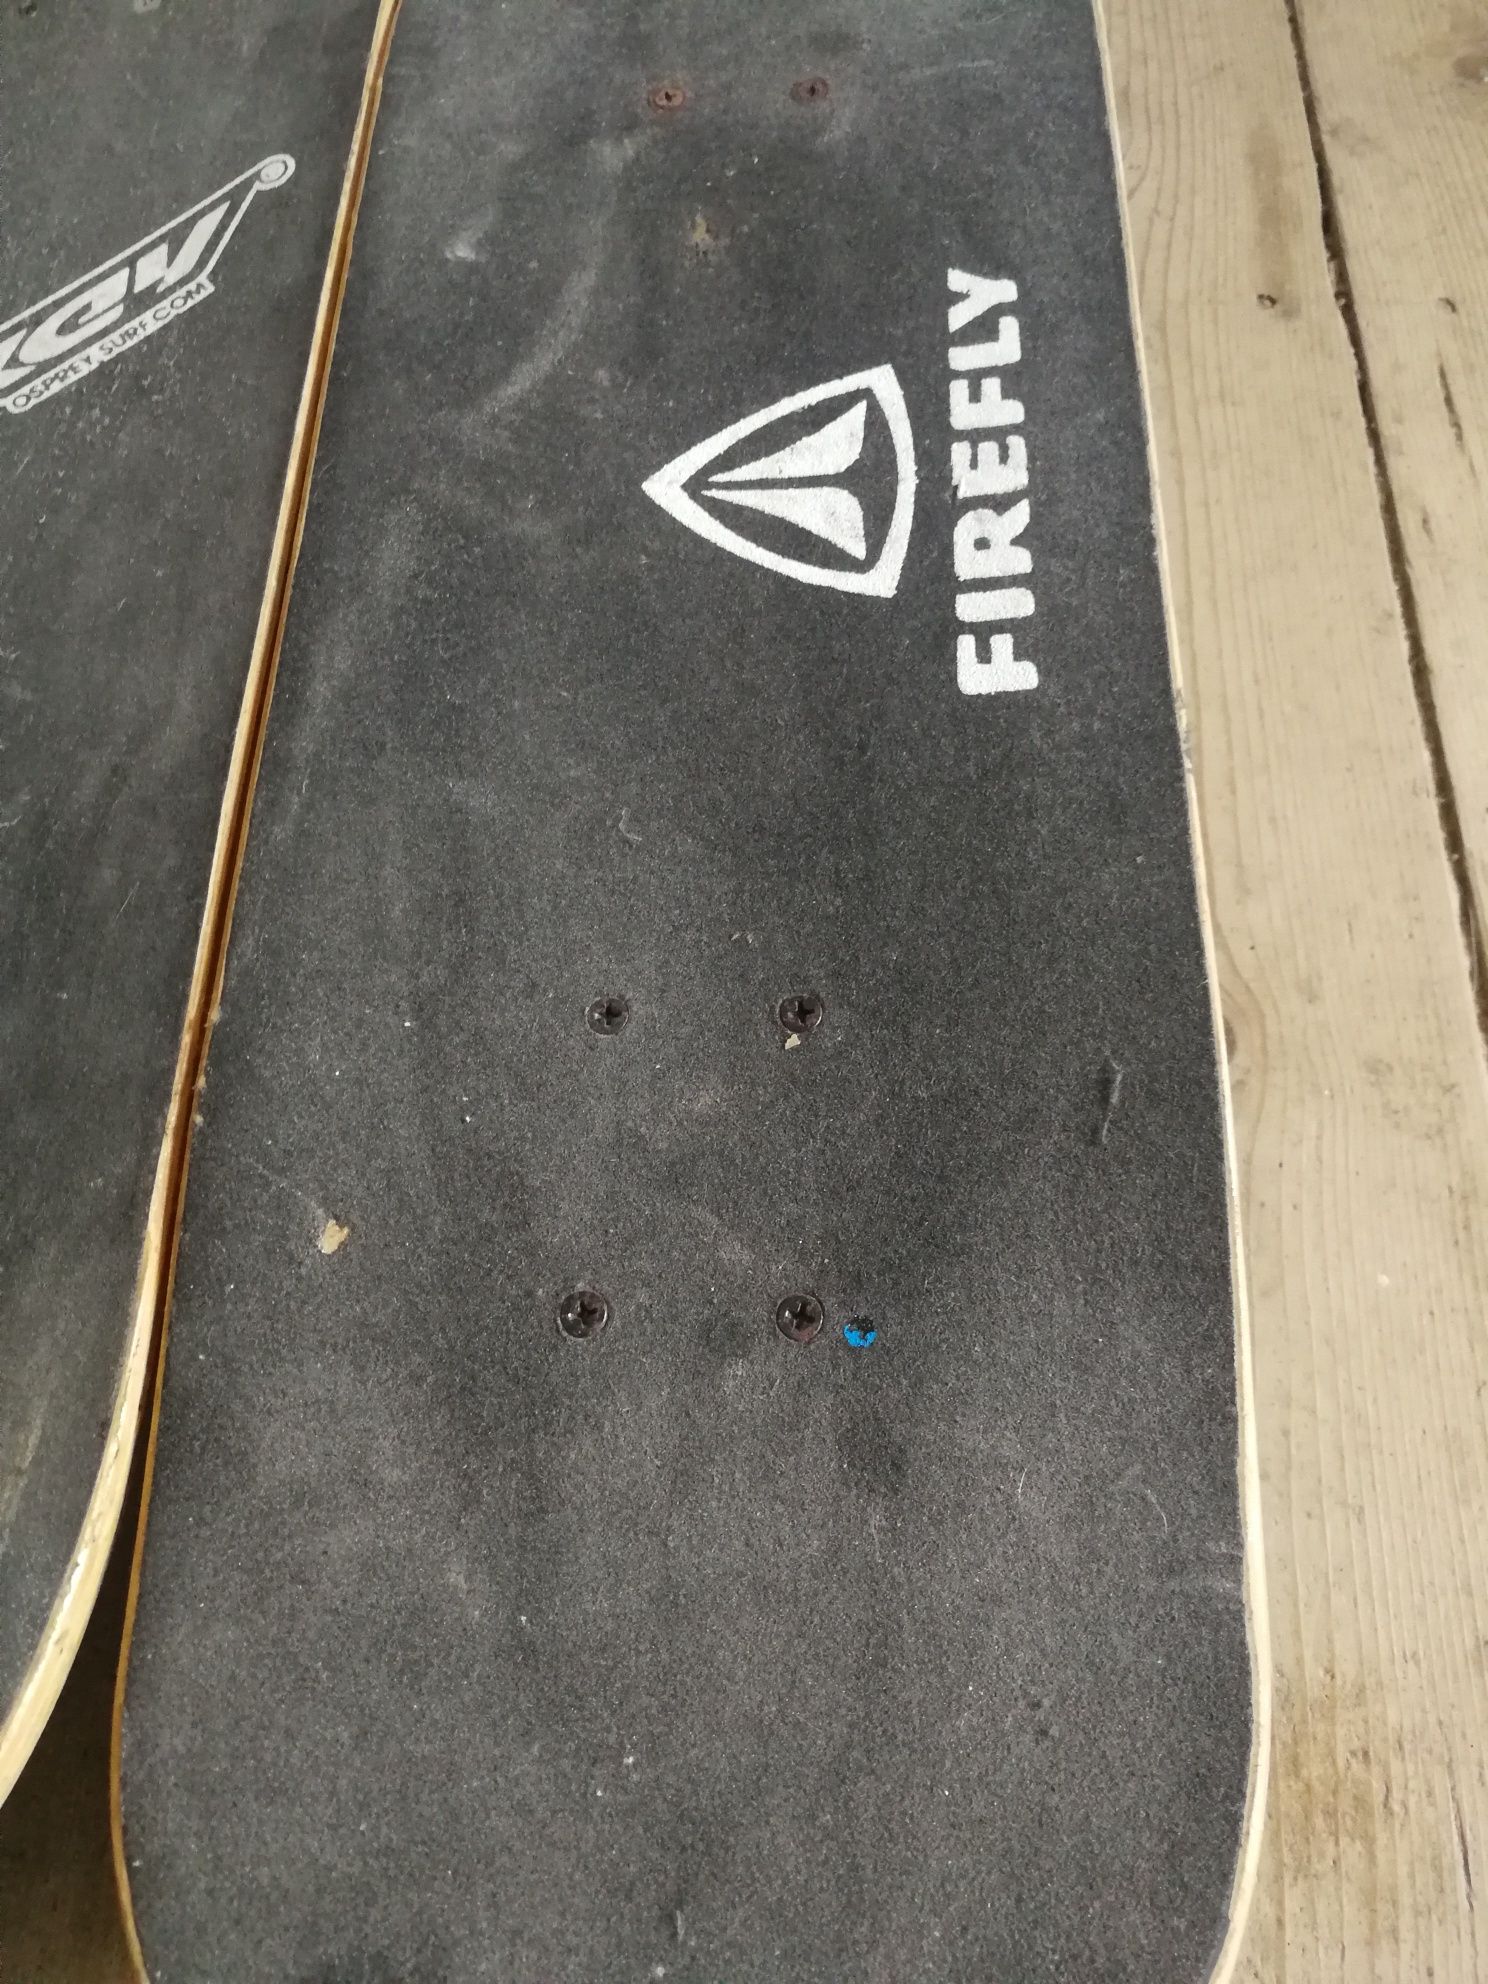 Skateboards Firefly & Osprey